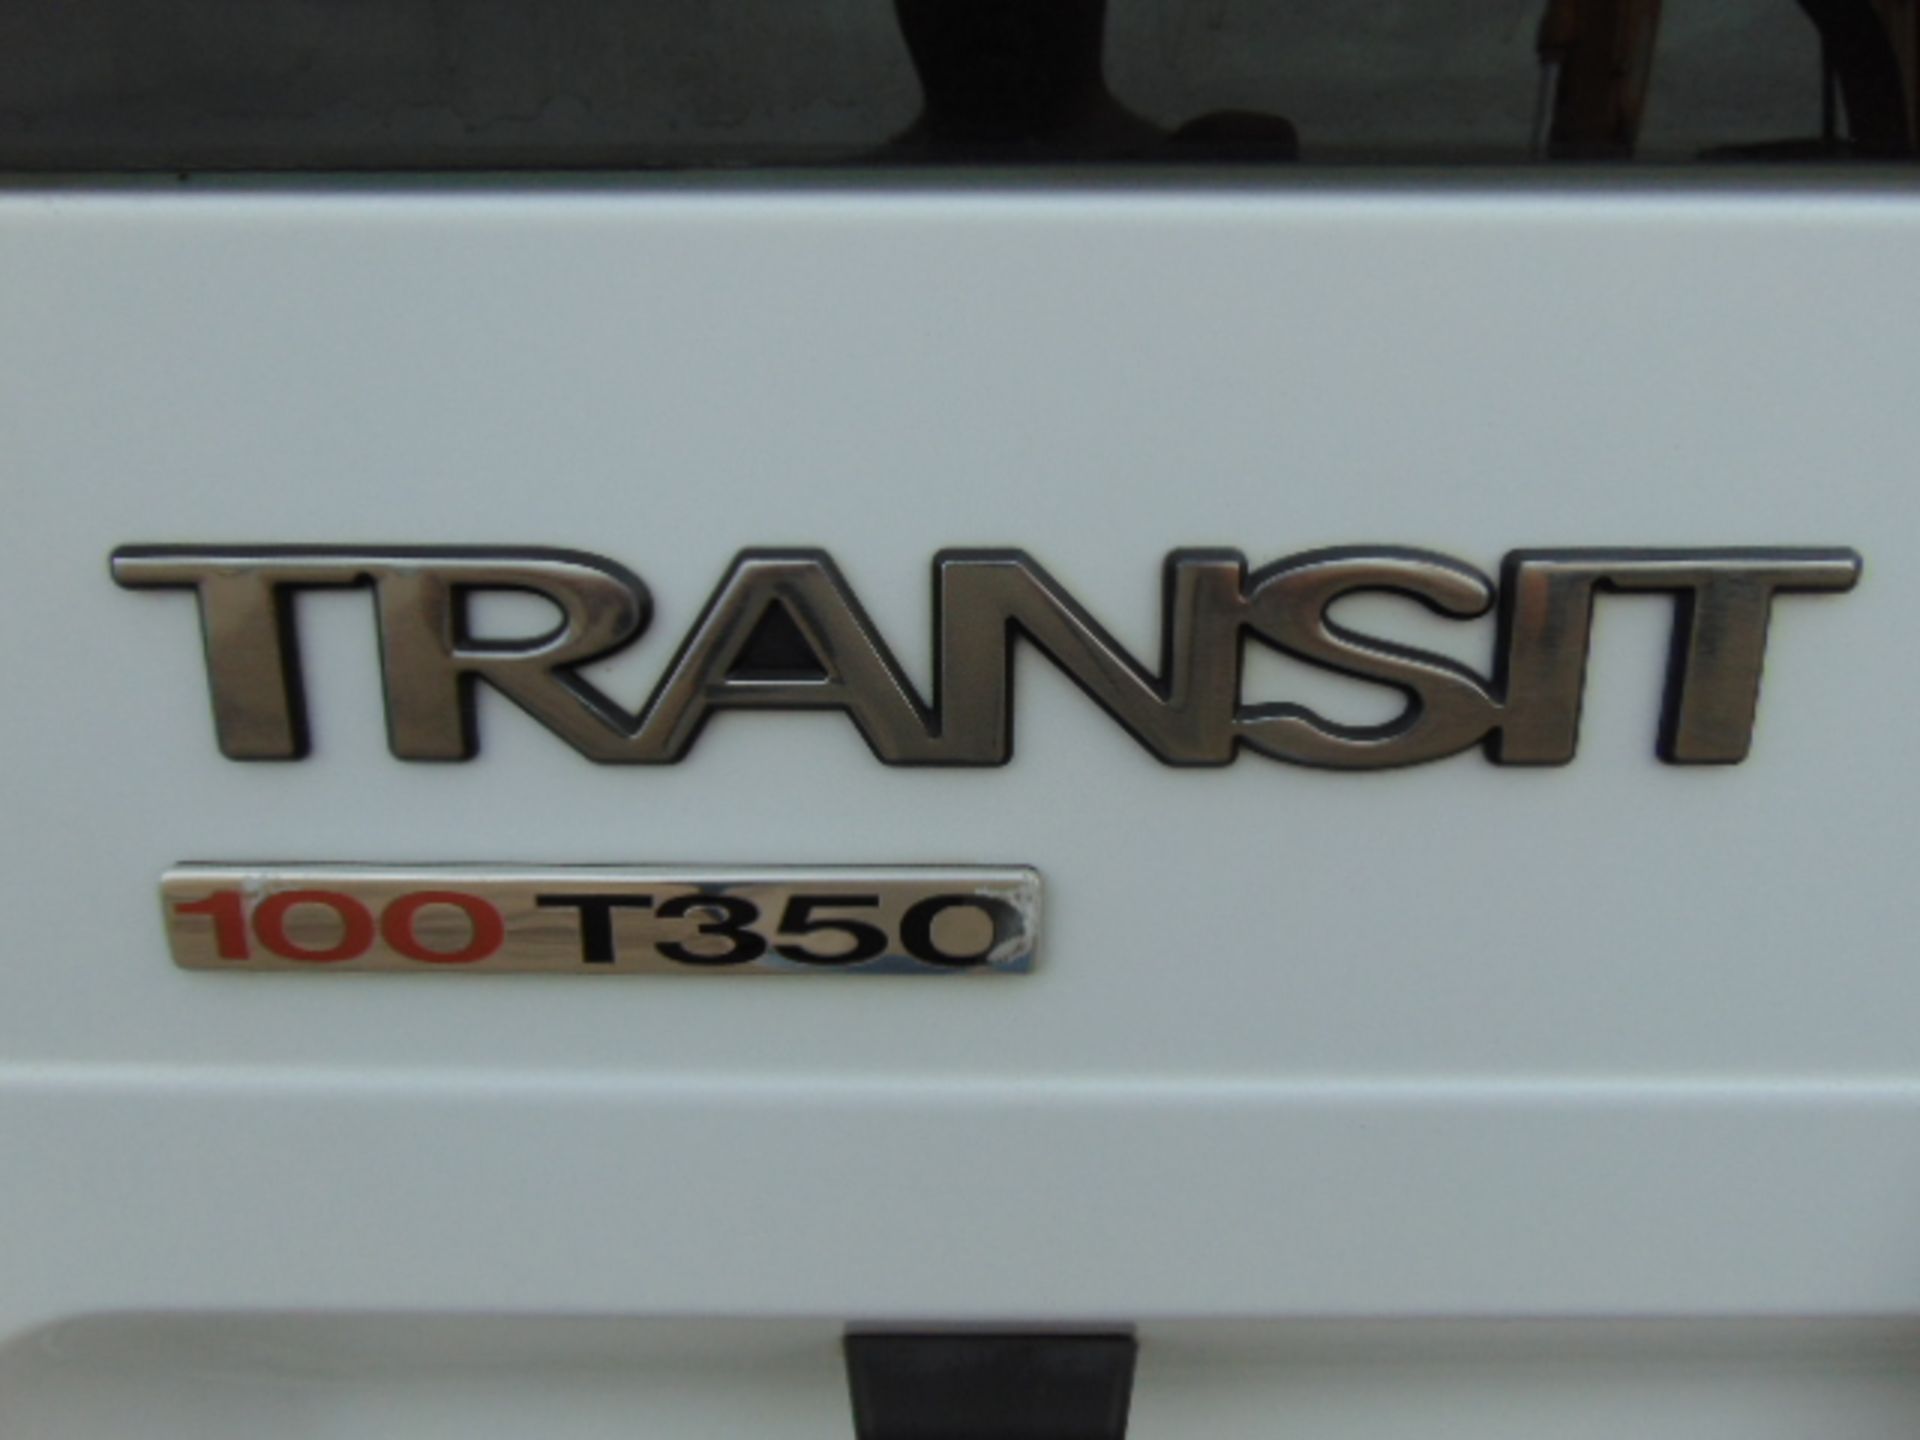 2009 Ford Transit 100 T350 Panel Van - Image 16 of 16